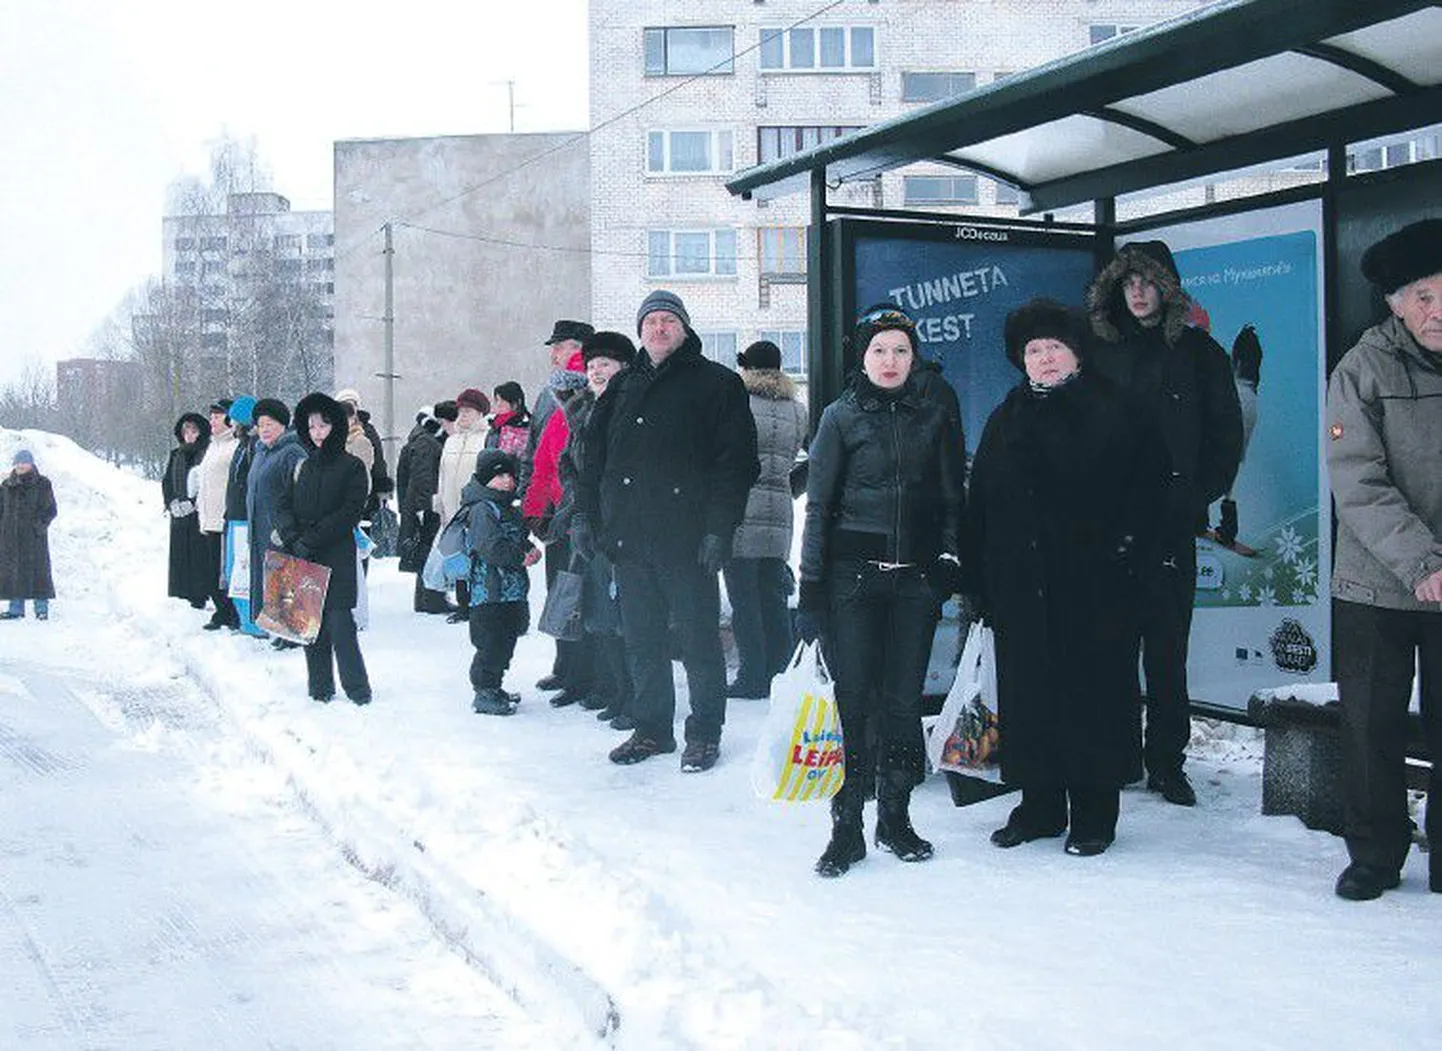 Мало того, что расходы на проезд для нарвских пассажиров подорожали, так еше и в автобусах давка, жалуются люди, ждущие по утрам автобус.